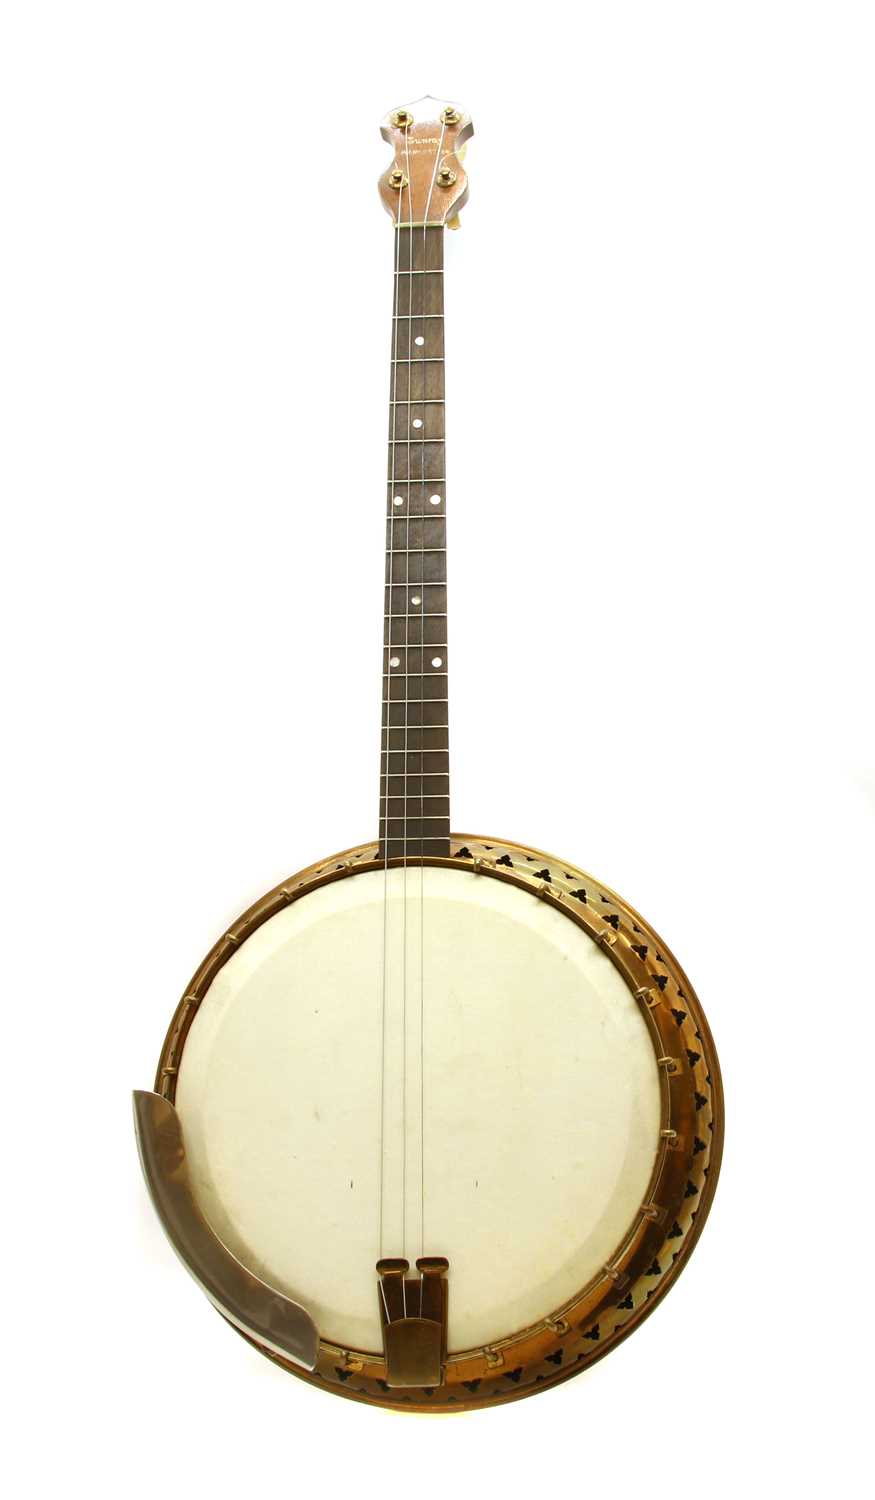 A Sunray banjo